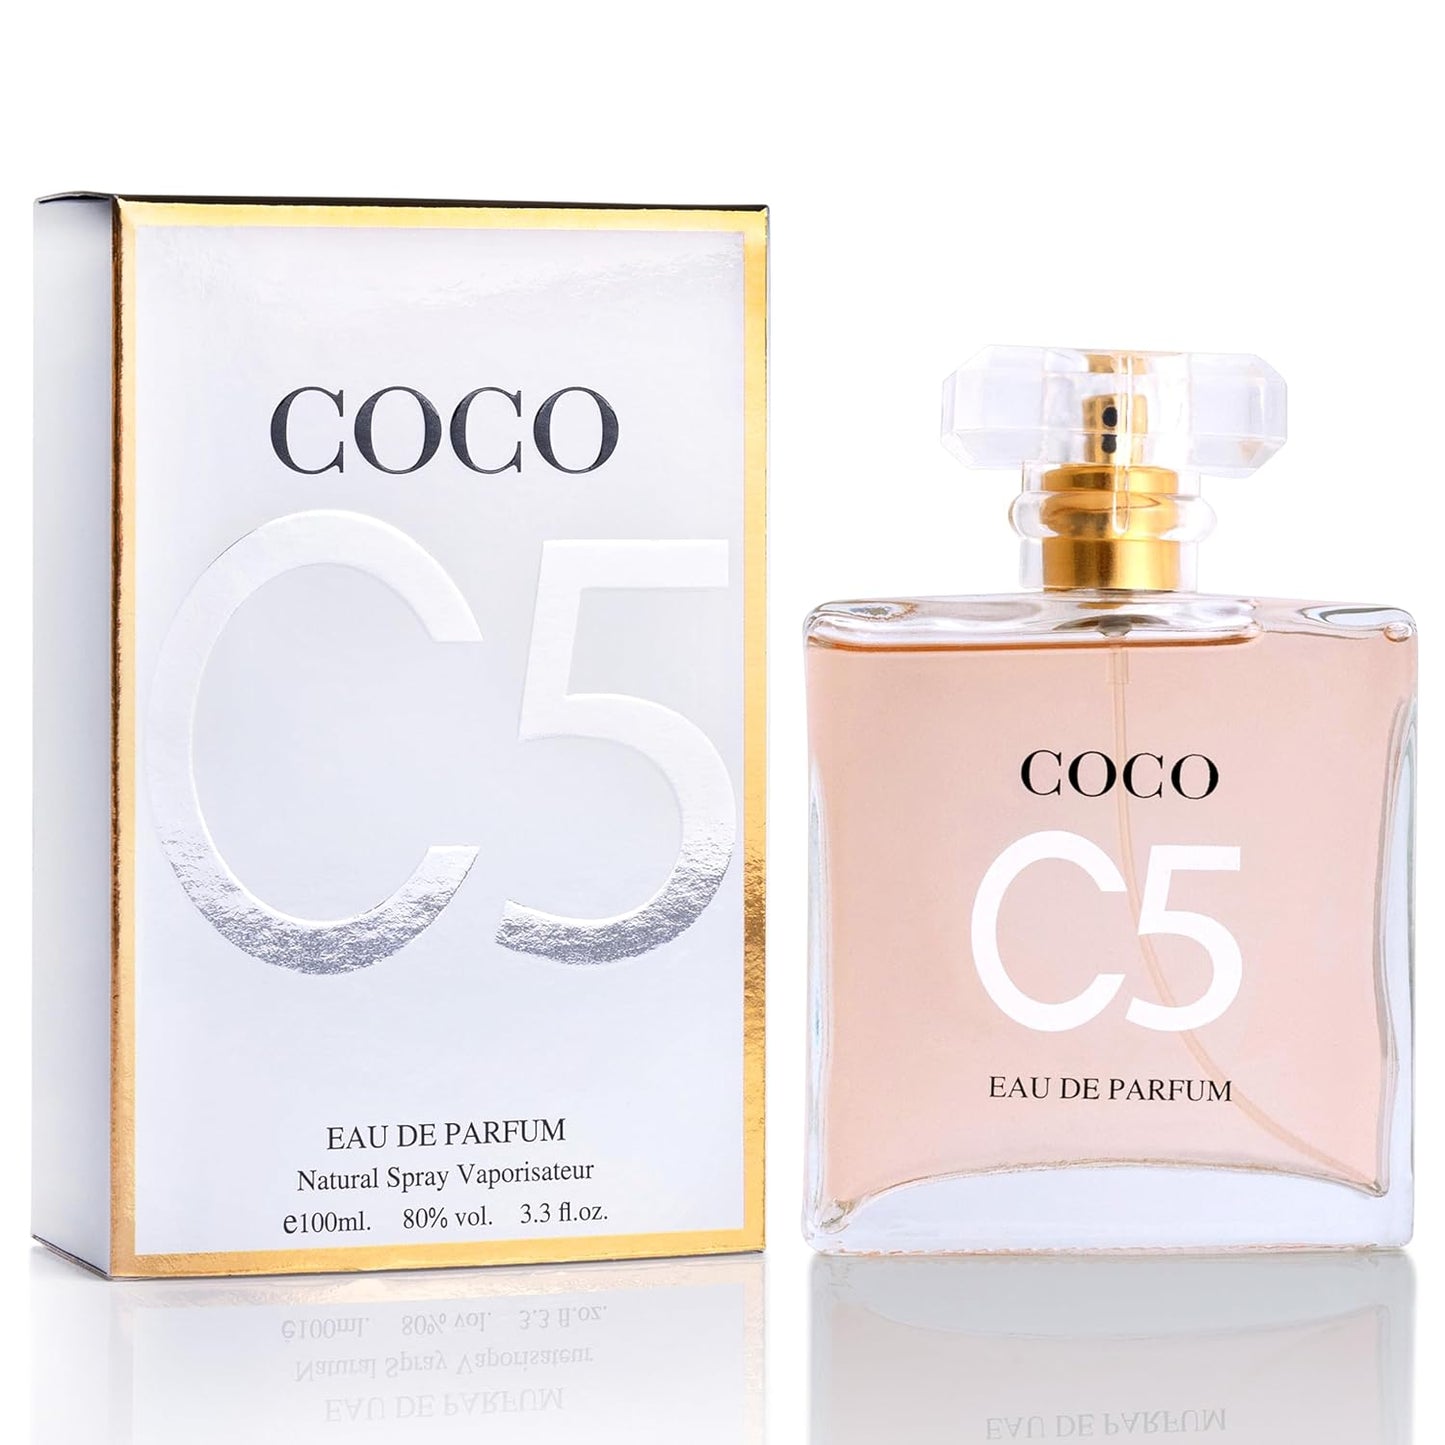 Coco-C5-Eau-De-Parfum-para-mujer-7721